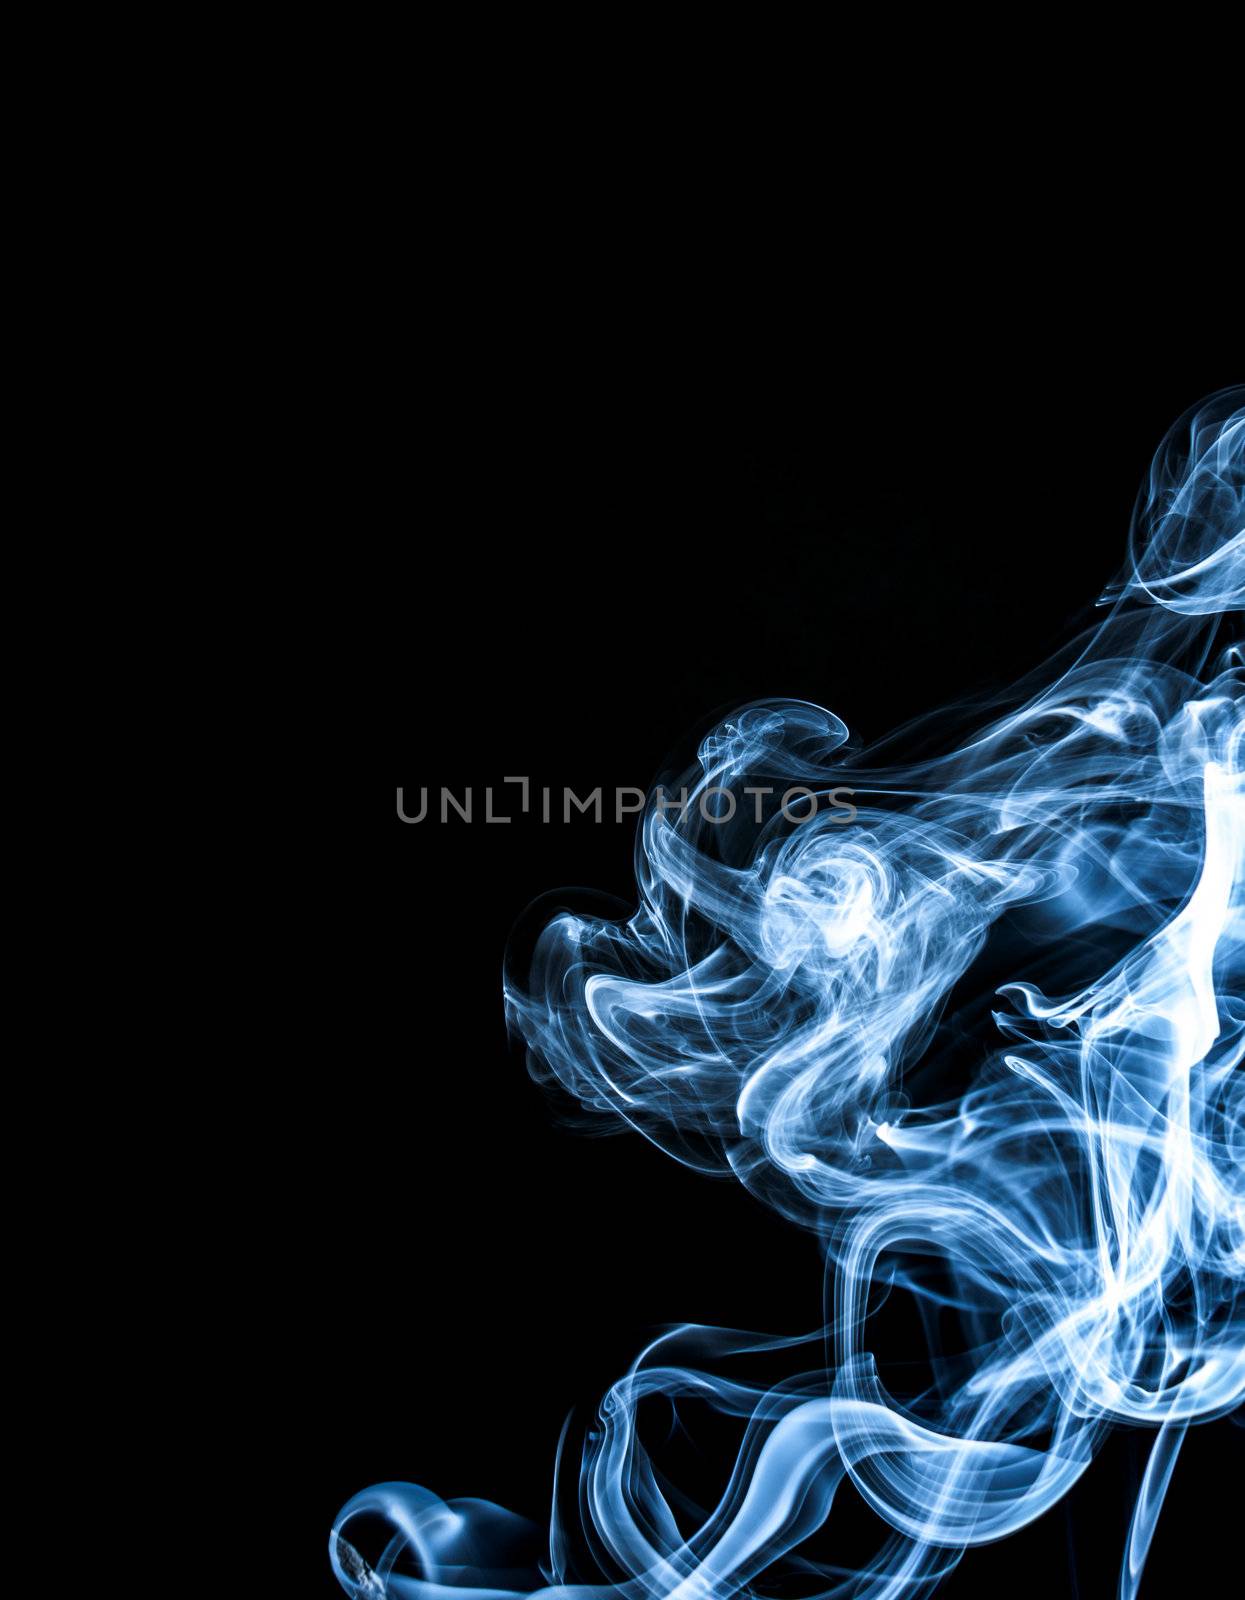 White smoke  on black background by TanawatPontchour